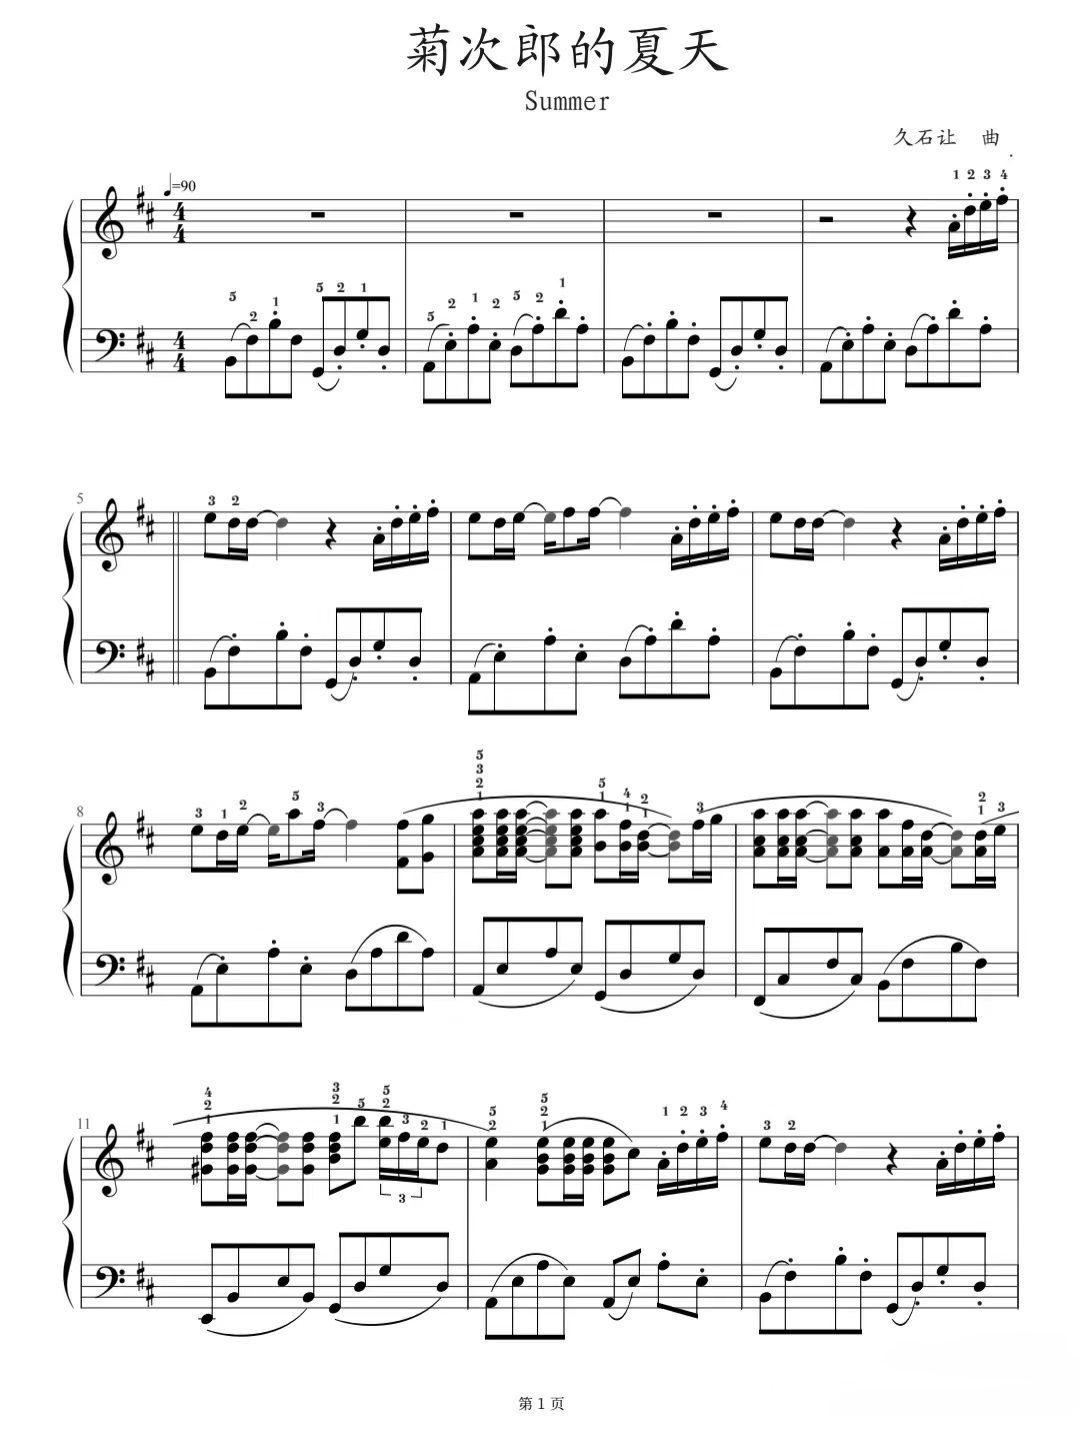 《菊次郎的夏天》的钢琴谱曲谱